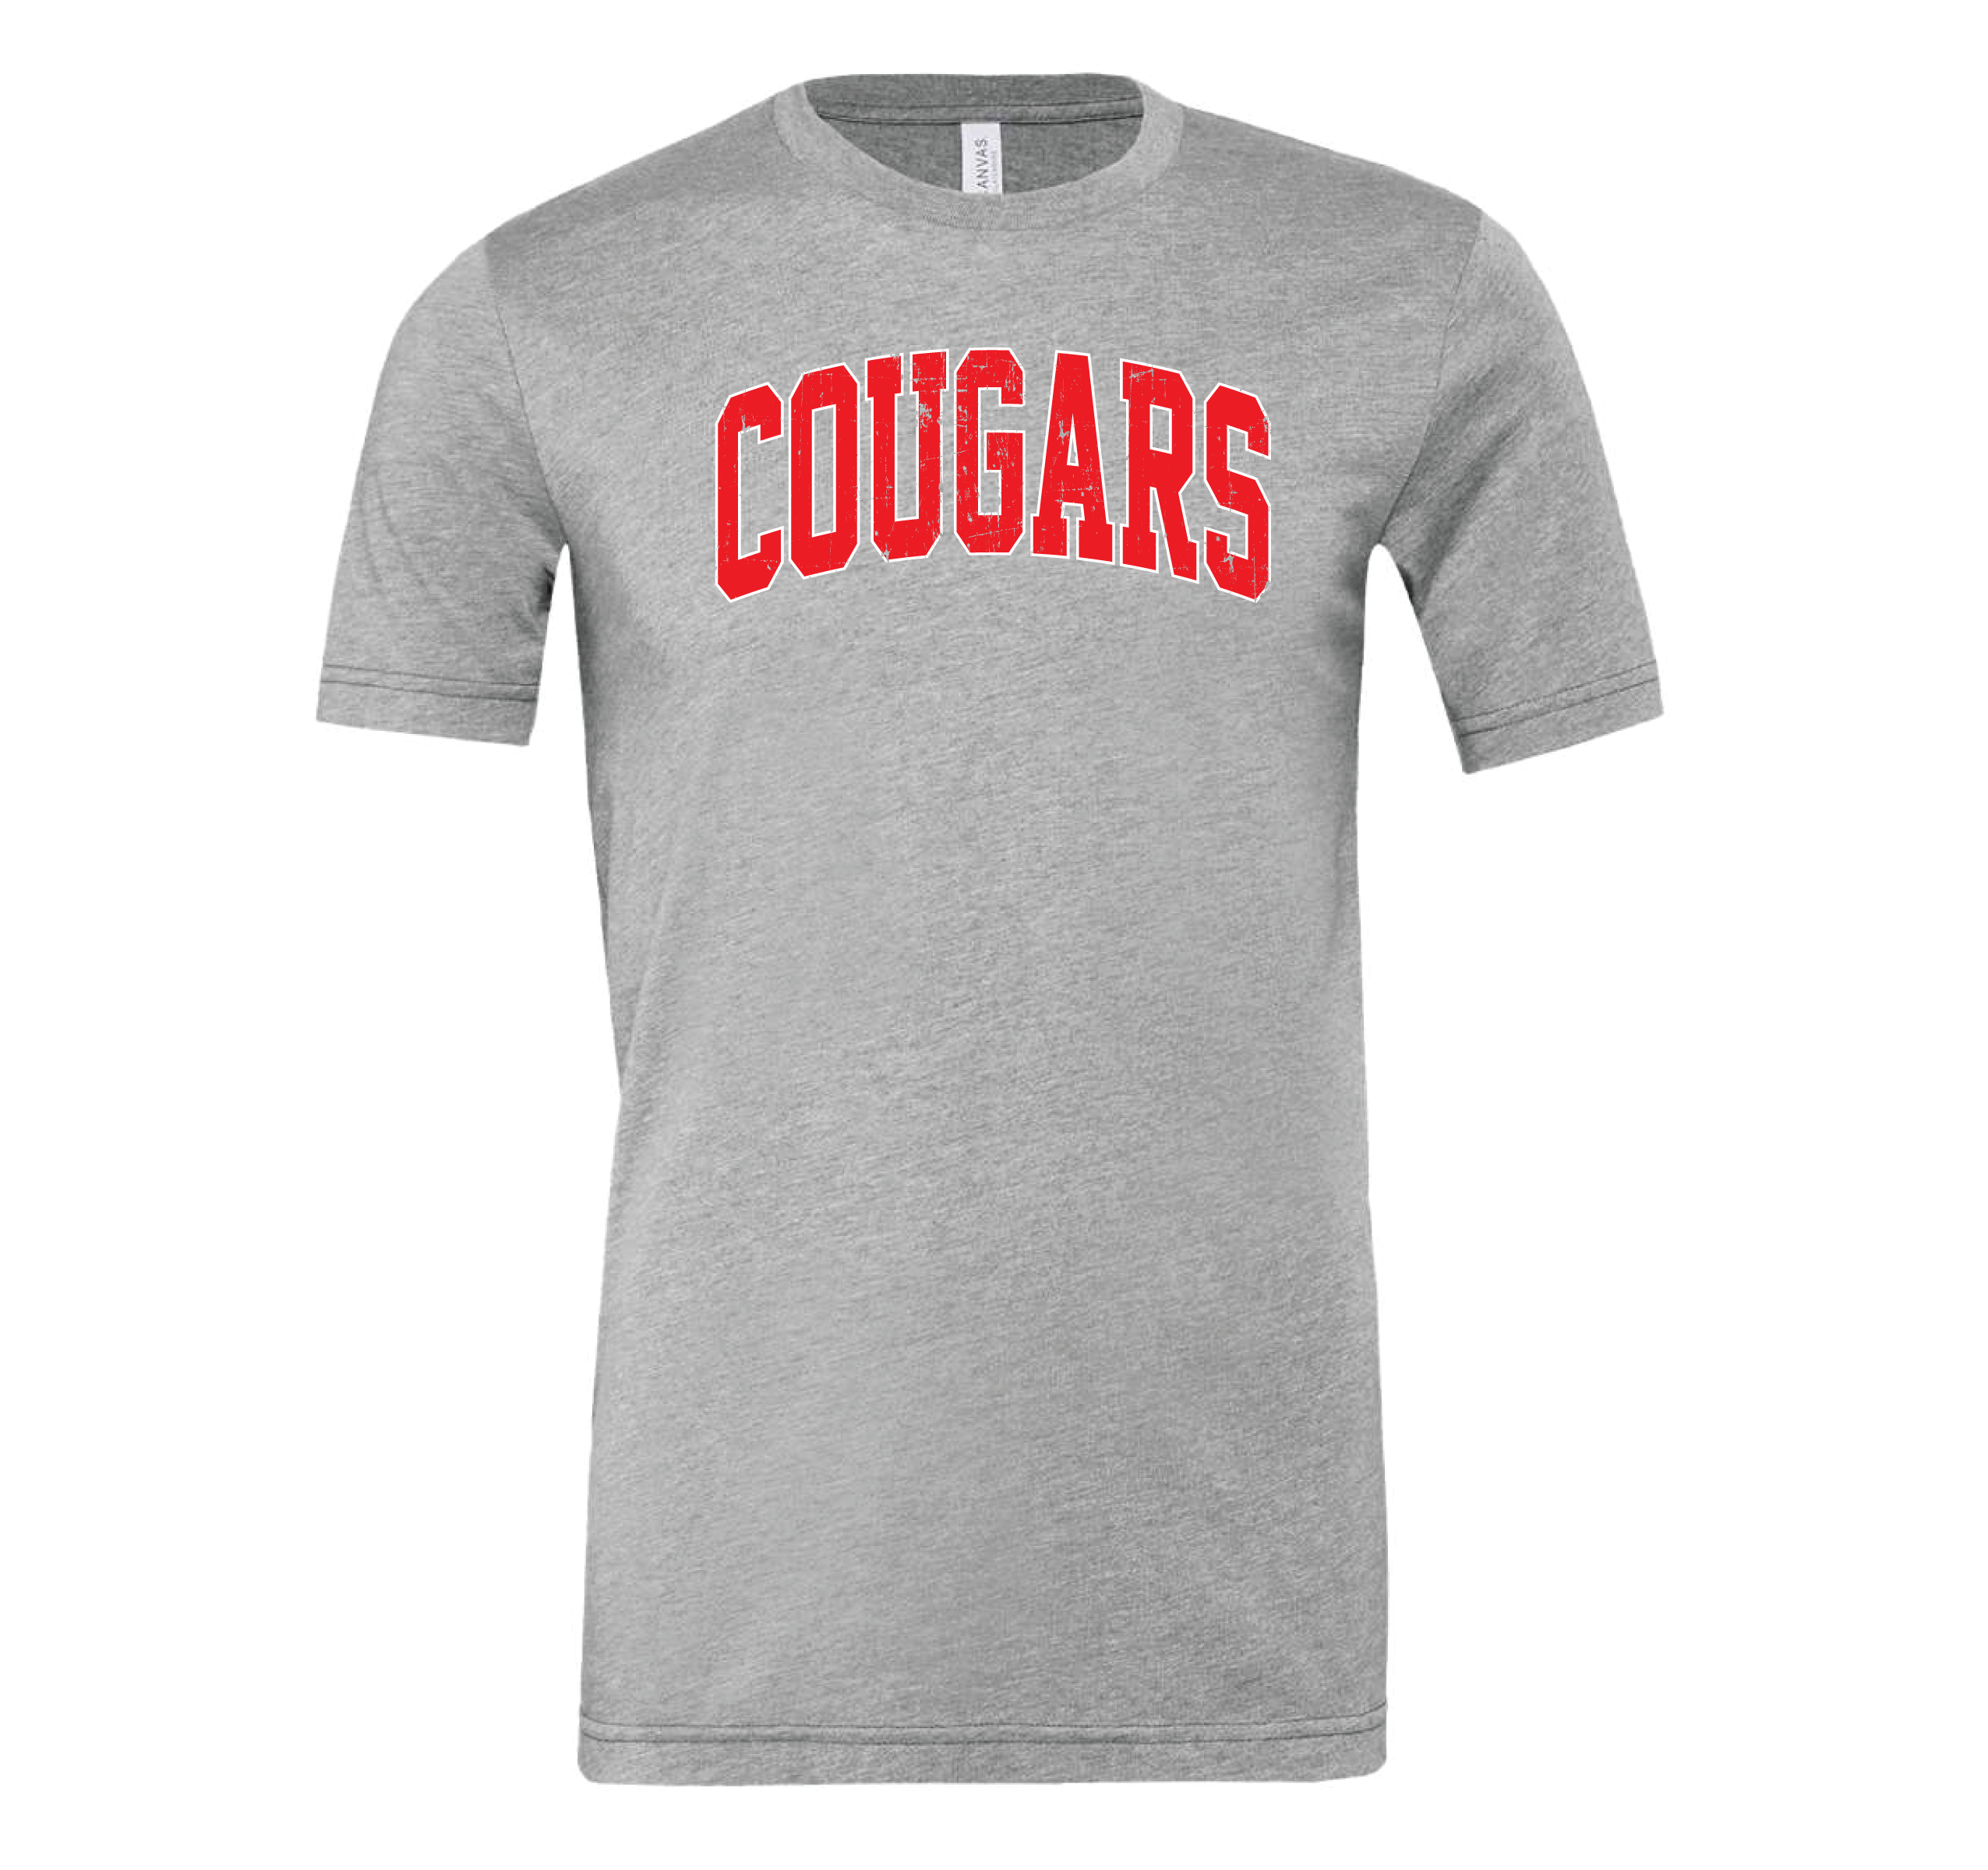 Cougars Collegiate Tee